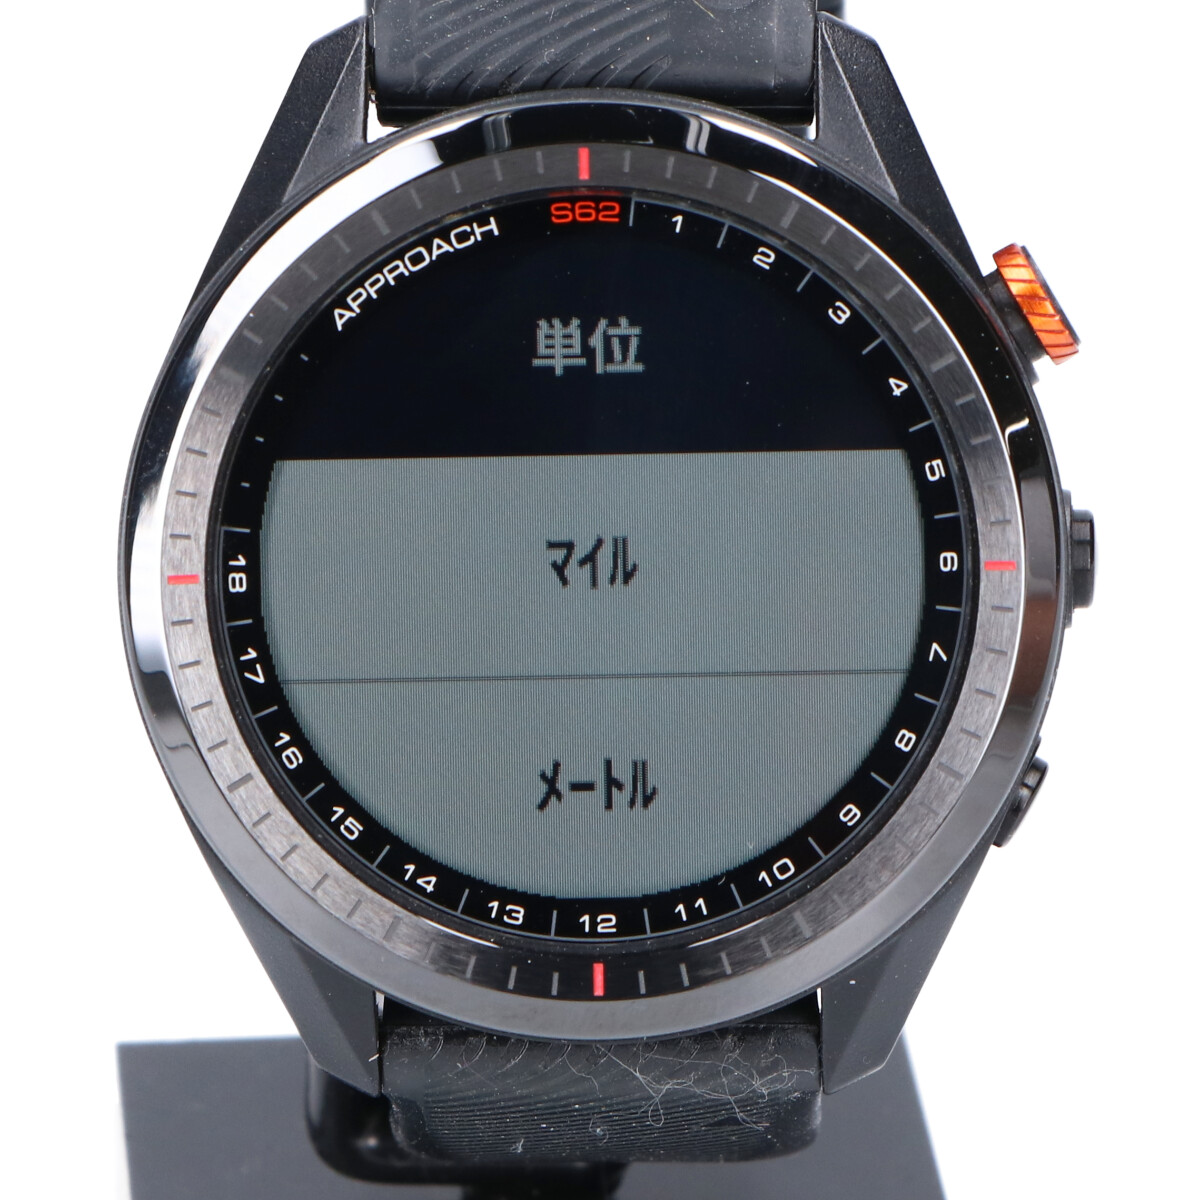 ガーミンのブラック 010-02200-22 APPROACH S62 スマートウォッチ 腕時計の買取実績です。